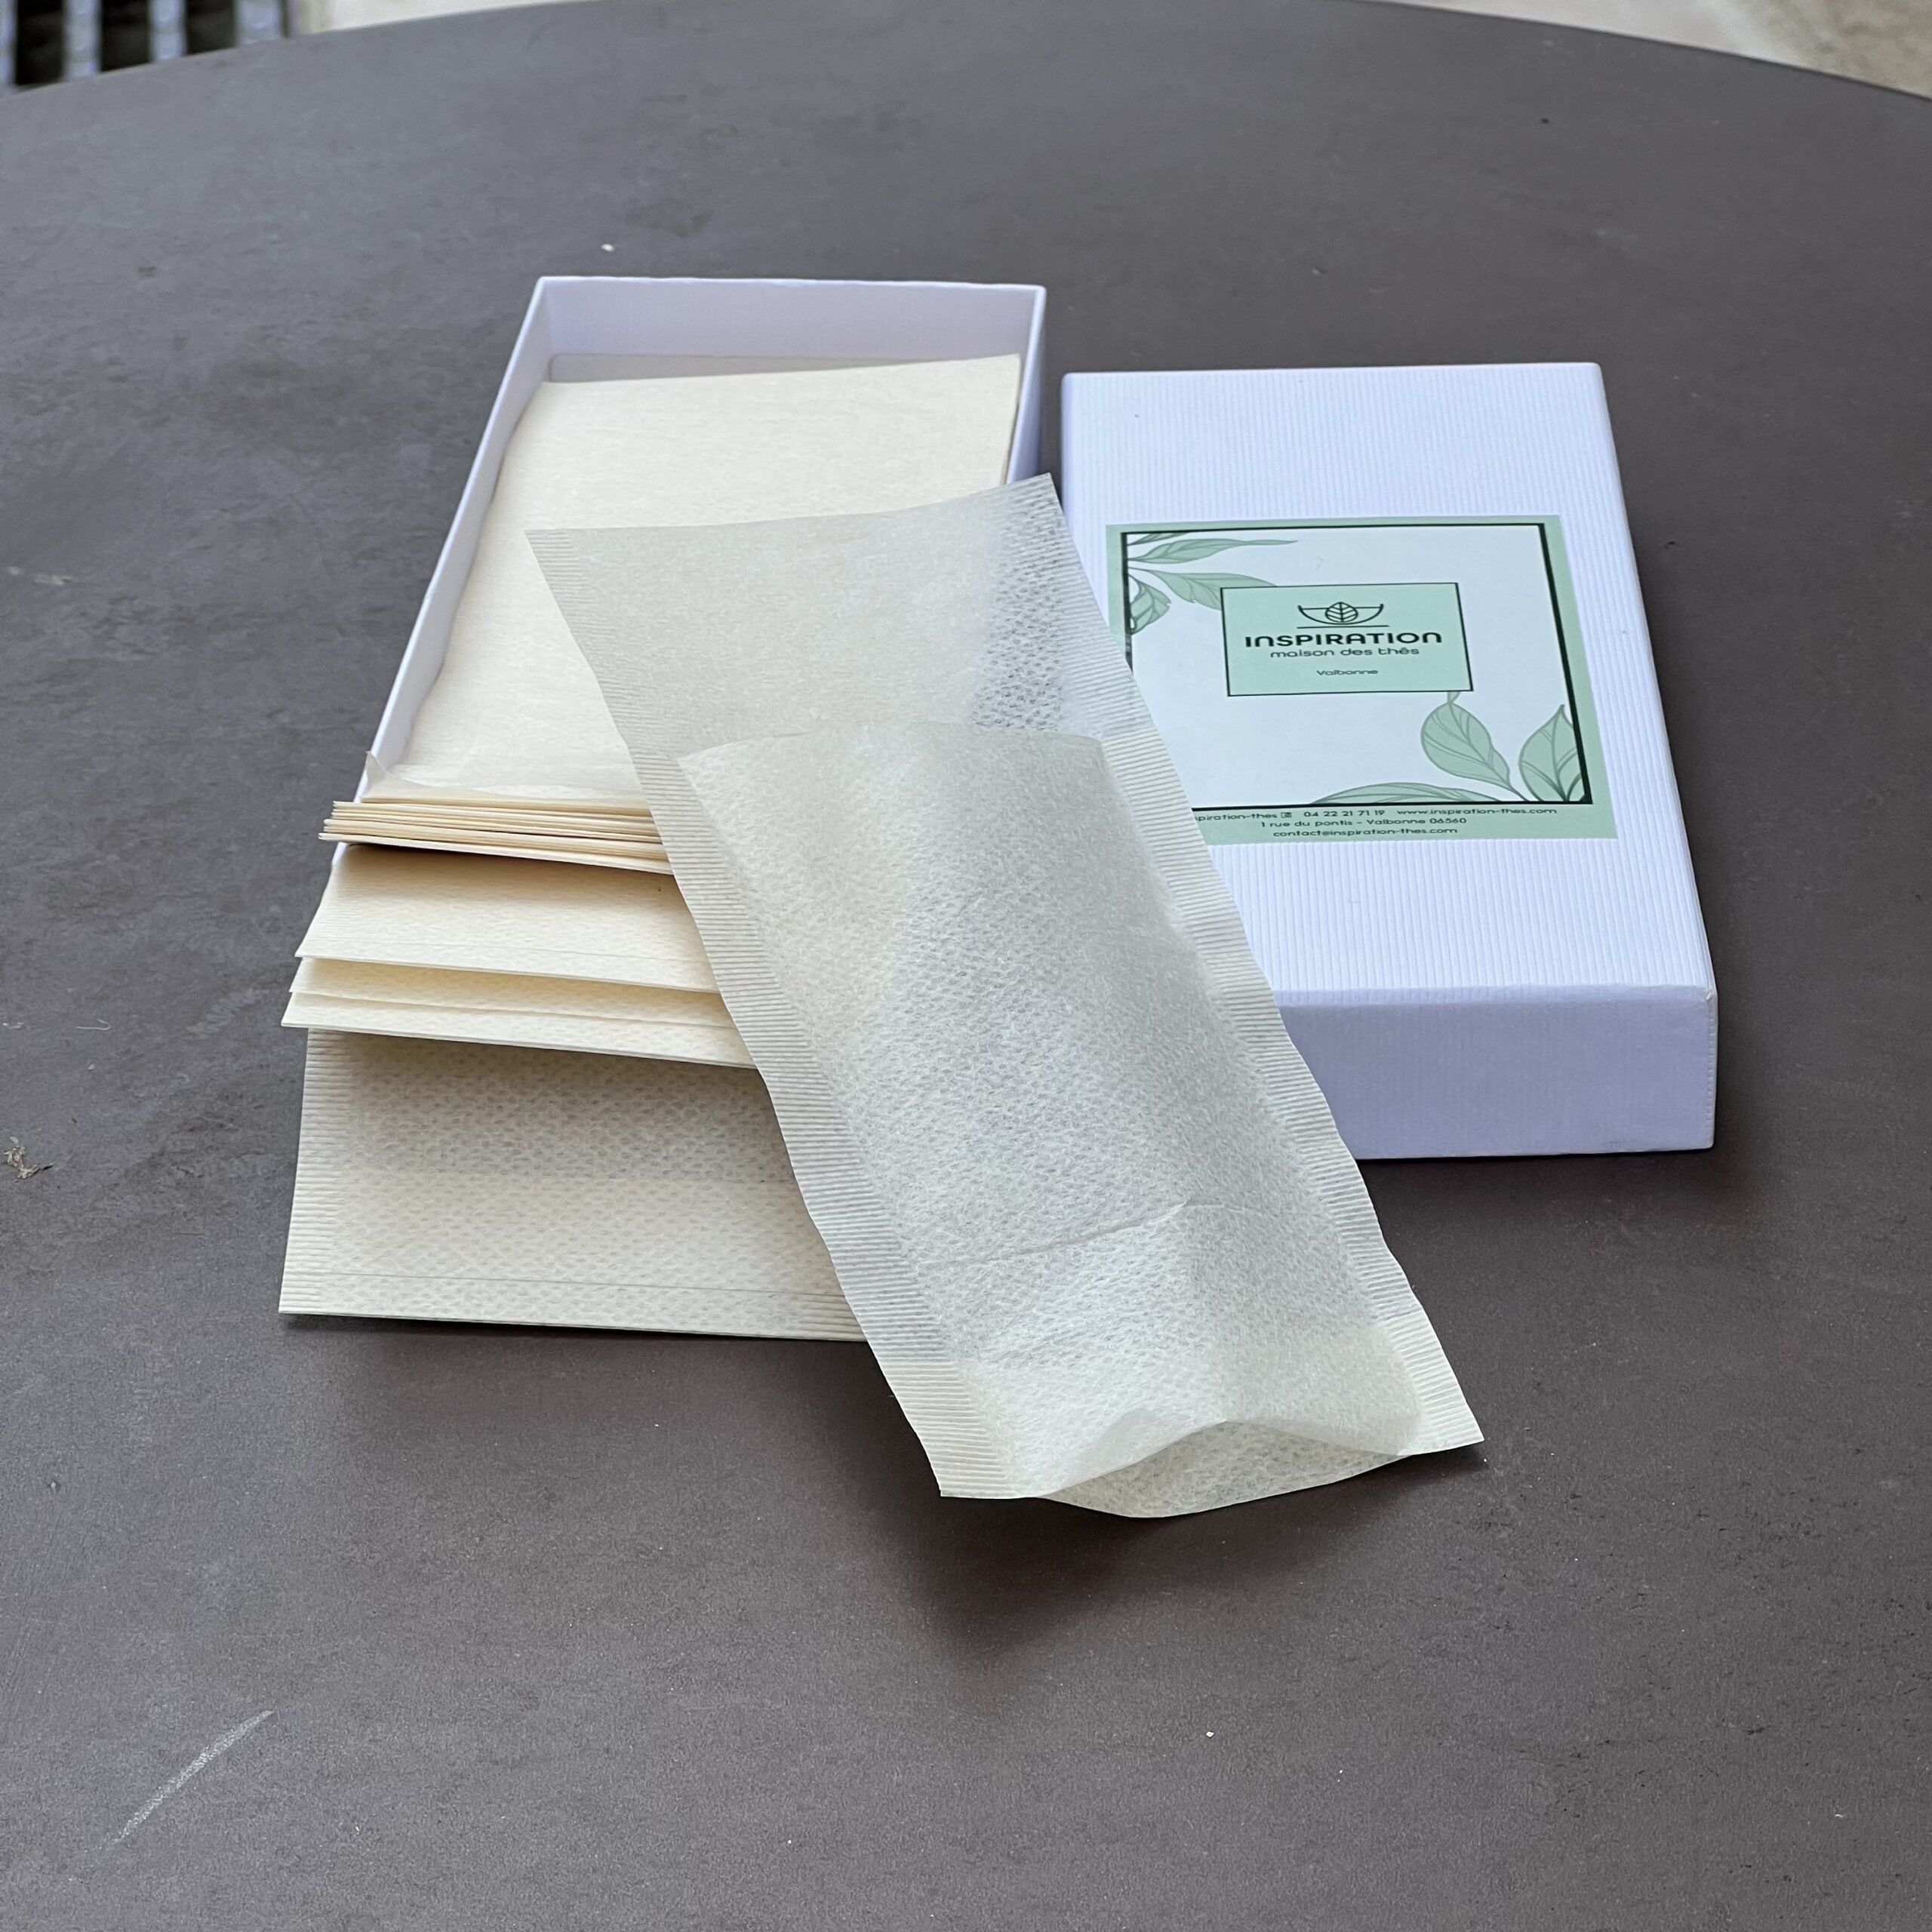 Filtres papier biodégradable pour tasse à thé x100 - Le Sourire du Gourmet